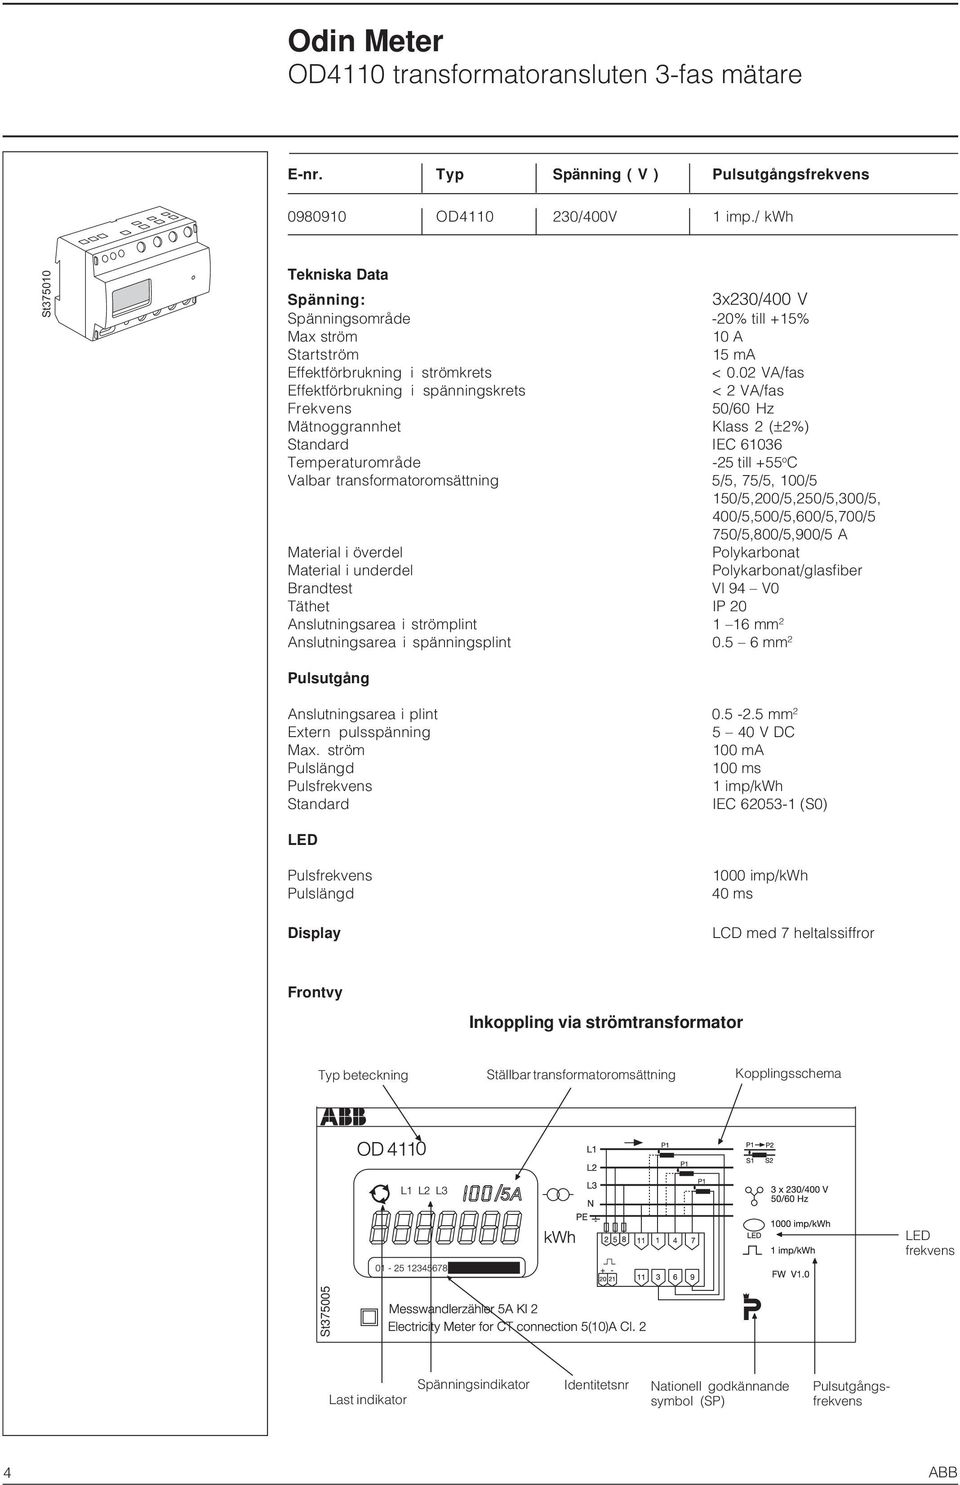 02 VA/fas Effektförbrukning i spänningskrets < 2 VA/fas Frekvens 50/60 Hz Mätnoggrannhet Klass 2 (±2%) Standard IEC 61036 Temperaturområde -25 till +55 o C Valbar transformatoromsättning 5/5, 75/5,